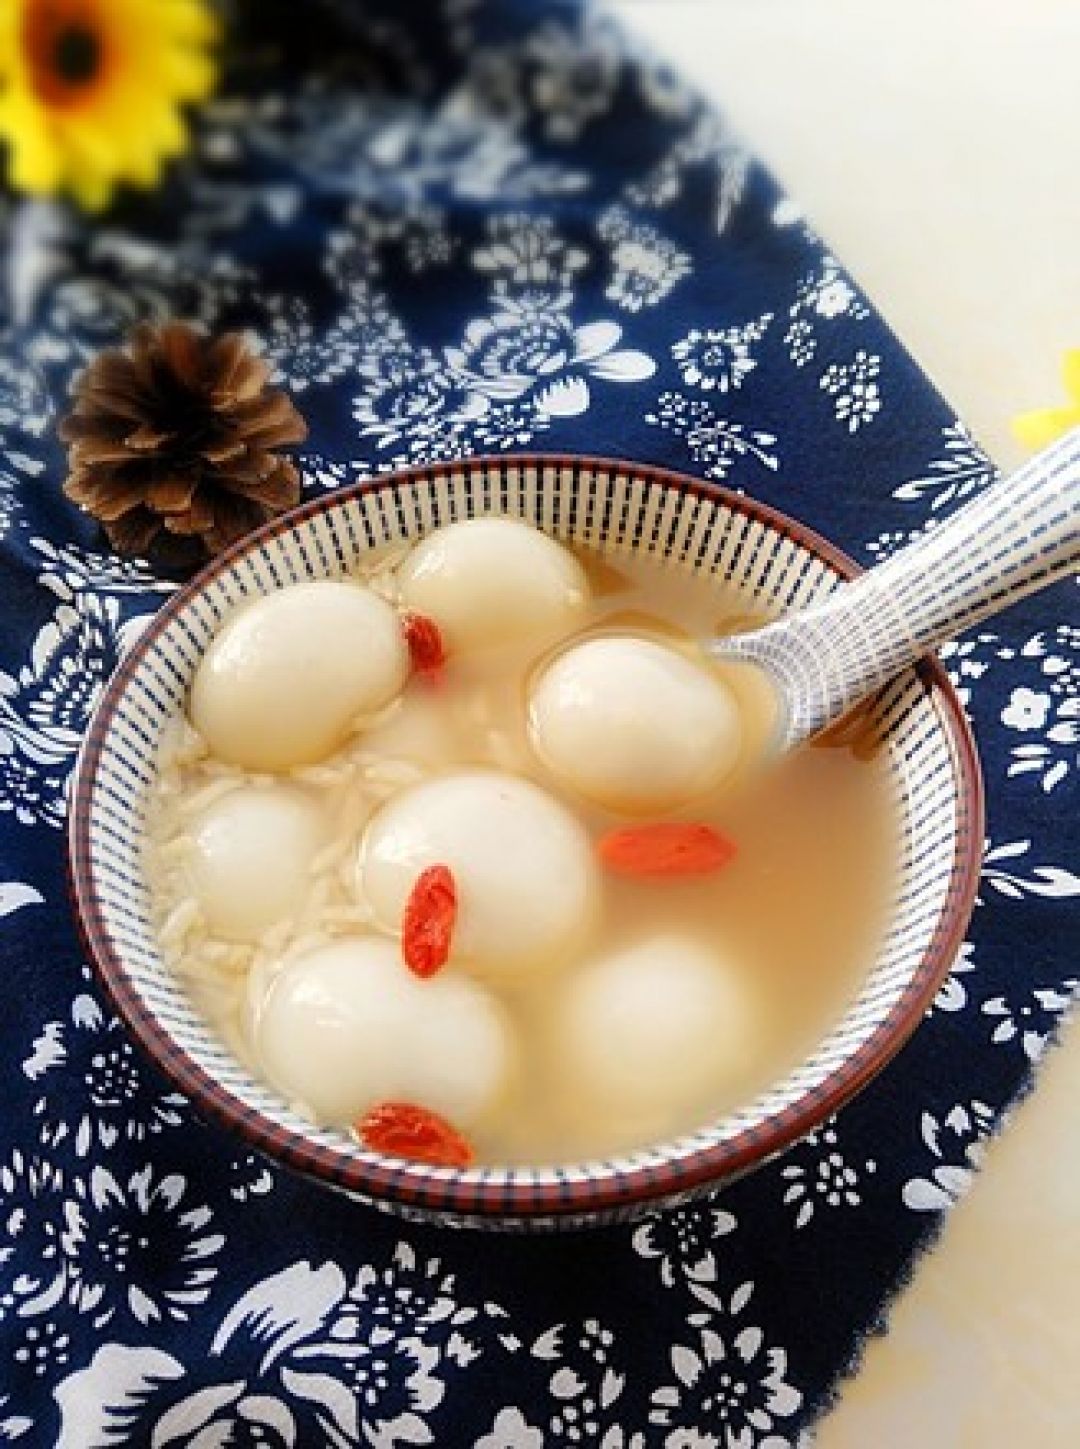 Jiuniang, Minuman Keras Tradisional China dari Beras Tapi Manis-Image-2